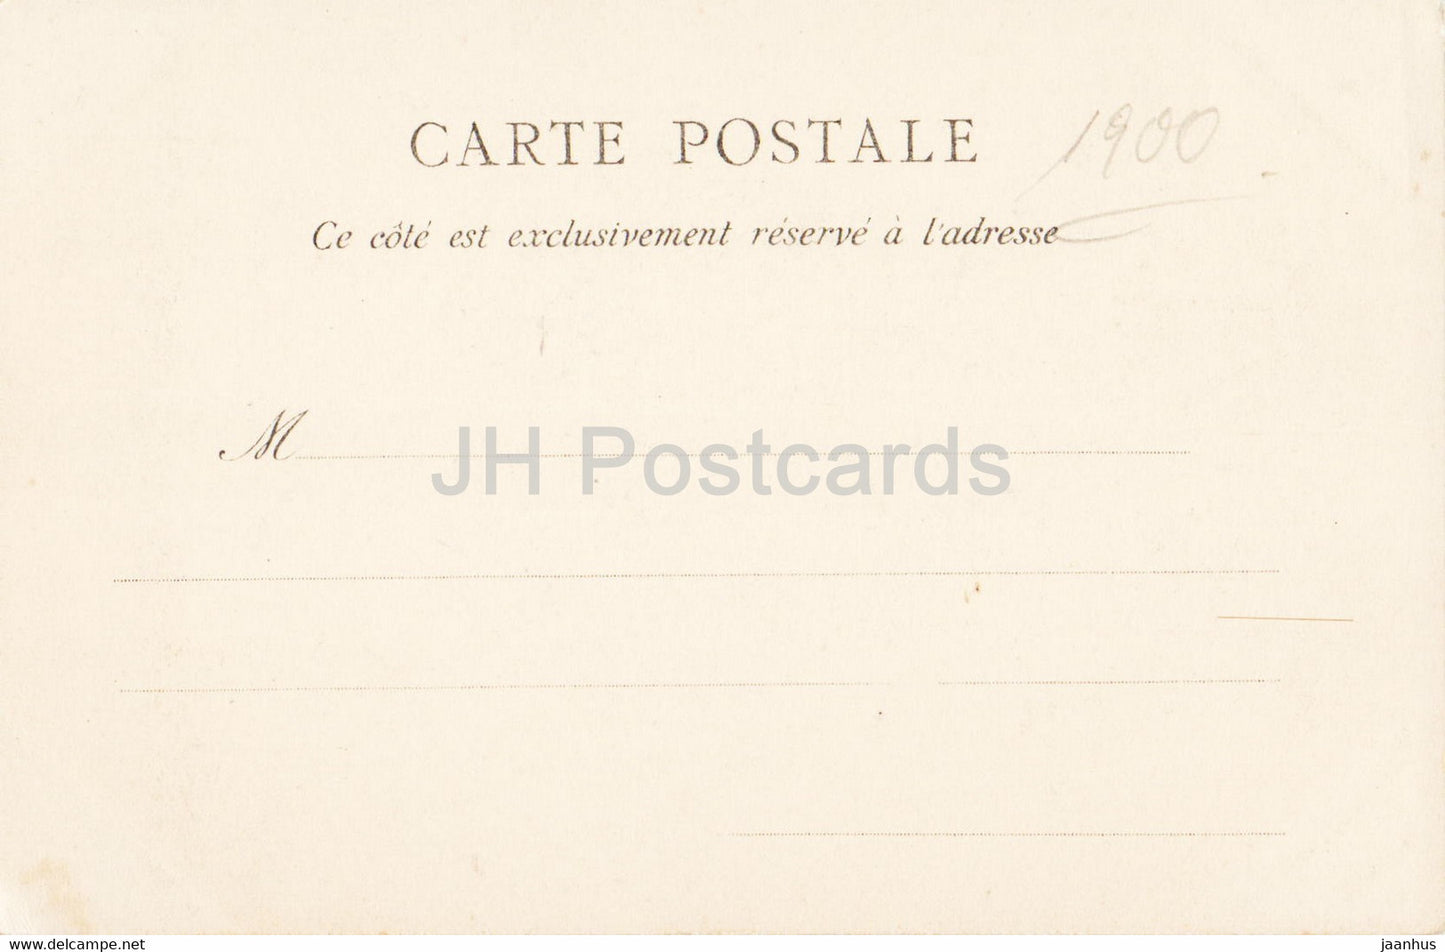 Paris - Notre Dame - Façade - cathédrale - 1 - carte postale ancienne - France - inutilisée